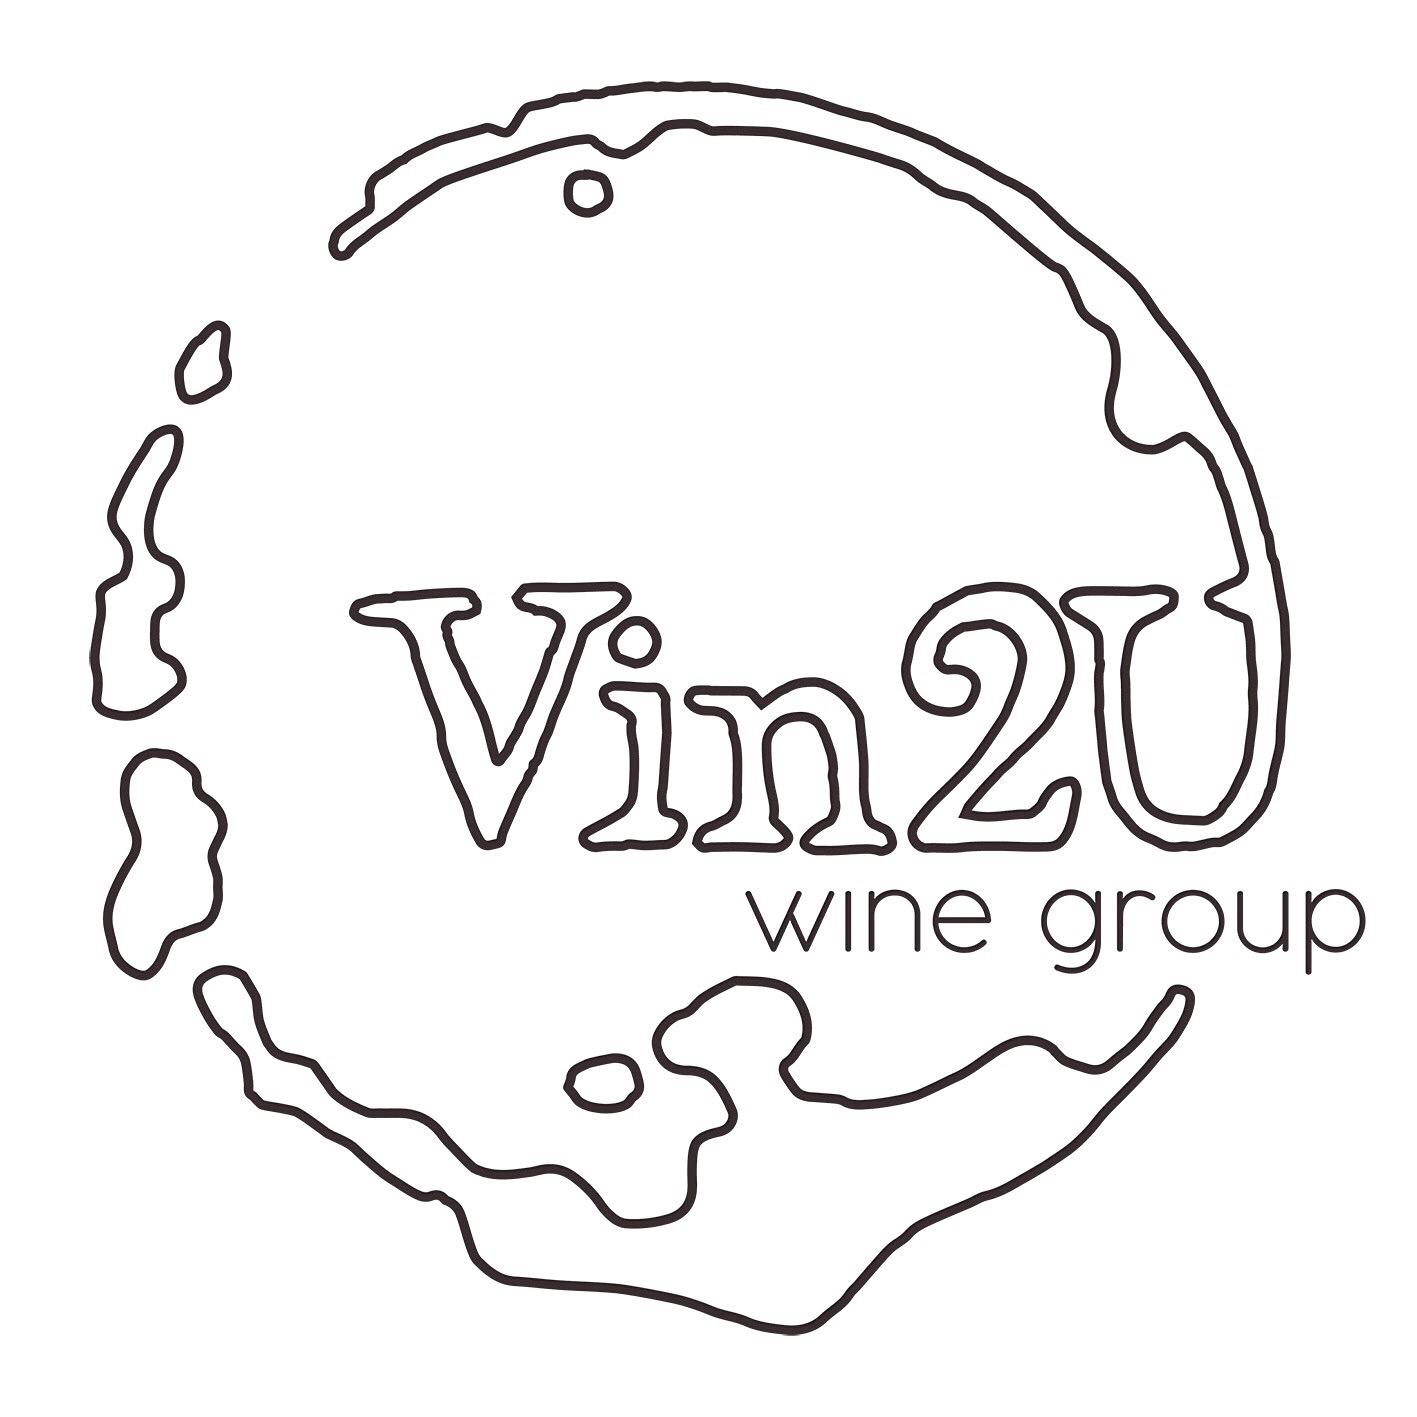 Vin2U Wine Group - Medium Plus